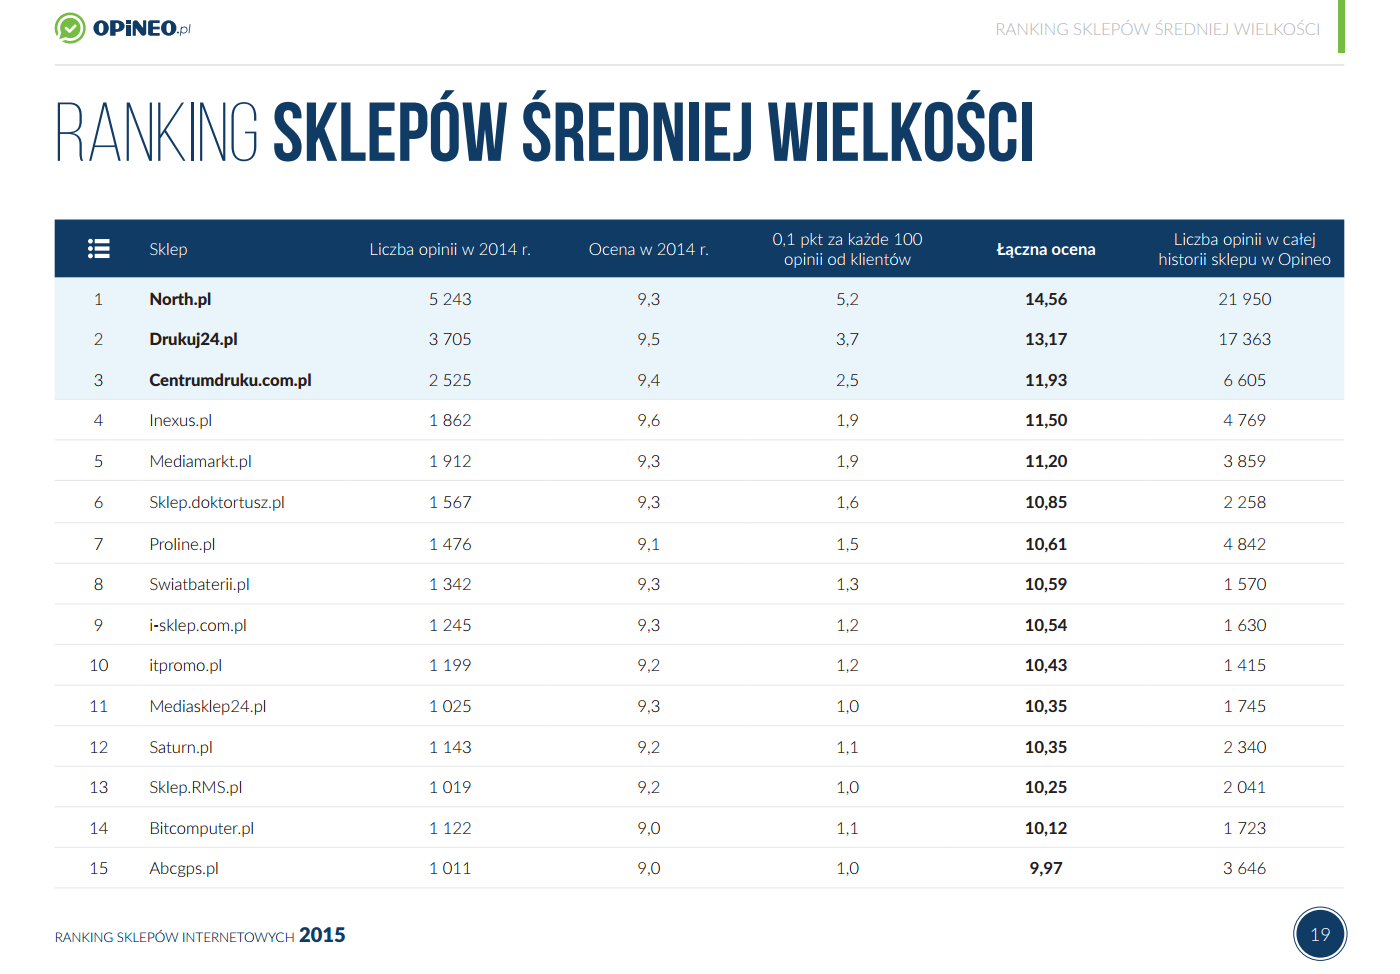 Ranking Sklepów Internetowych / opineo.pl 2015